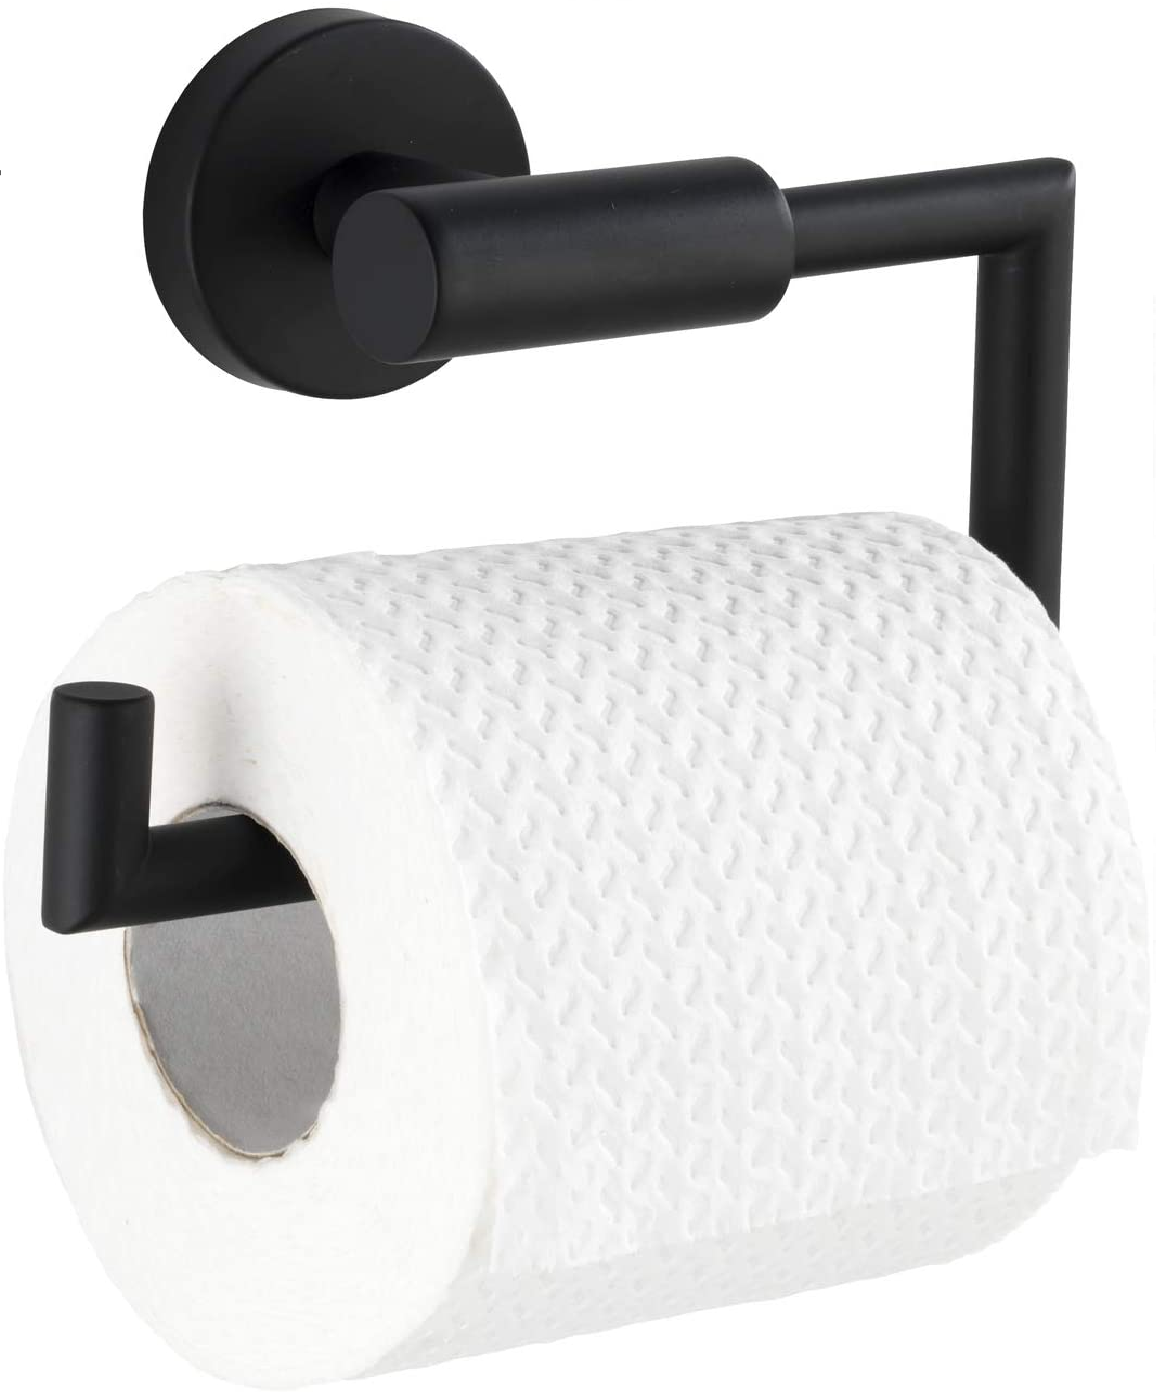 Toilettenpapierhalter Bosio Edelstahl Black matt ohne Deckel - WC-Rollenhalter, Edelstahl rostfrei, 15 x 10.5 x 6.5 cm, Matt